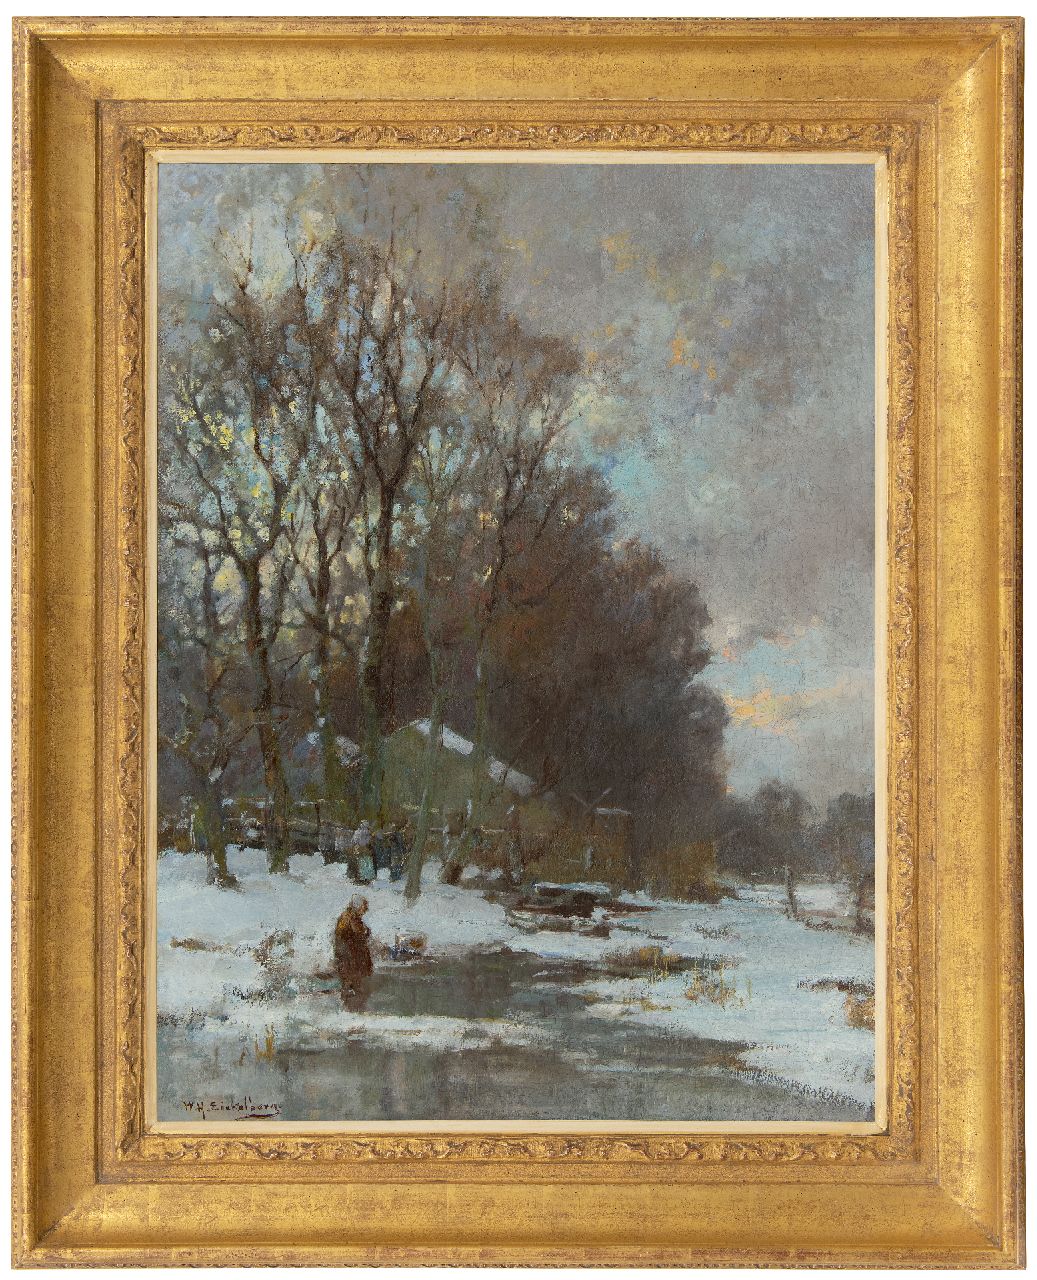 Eickelberg W.H.  | Willem Hendrik Eickelberg | Schilderijen te koop aangeboden | Winterdag aan de bosrand, olieverf op doek 72,5 x 54,2 cm, gesigneerd linksonder